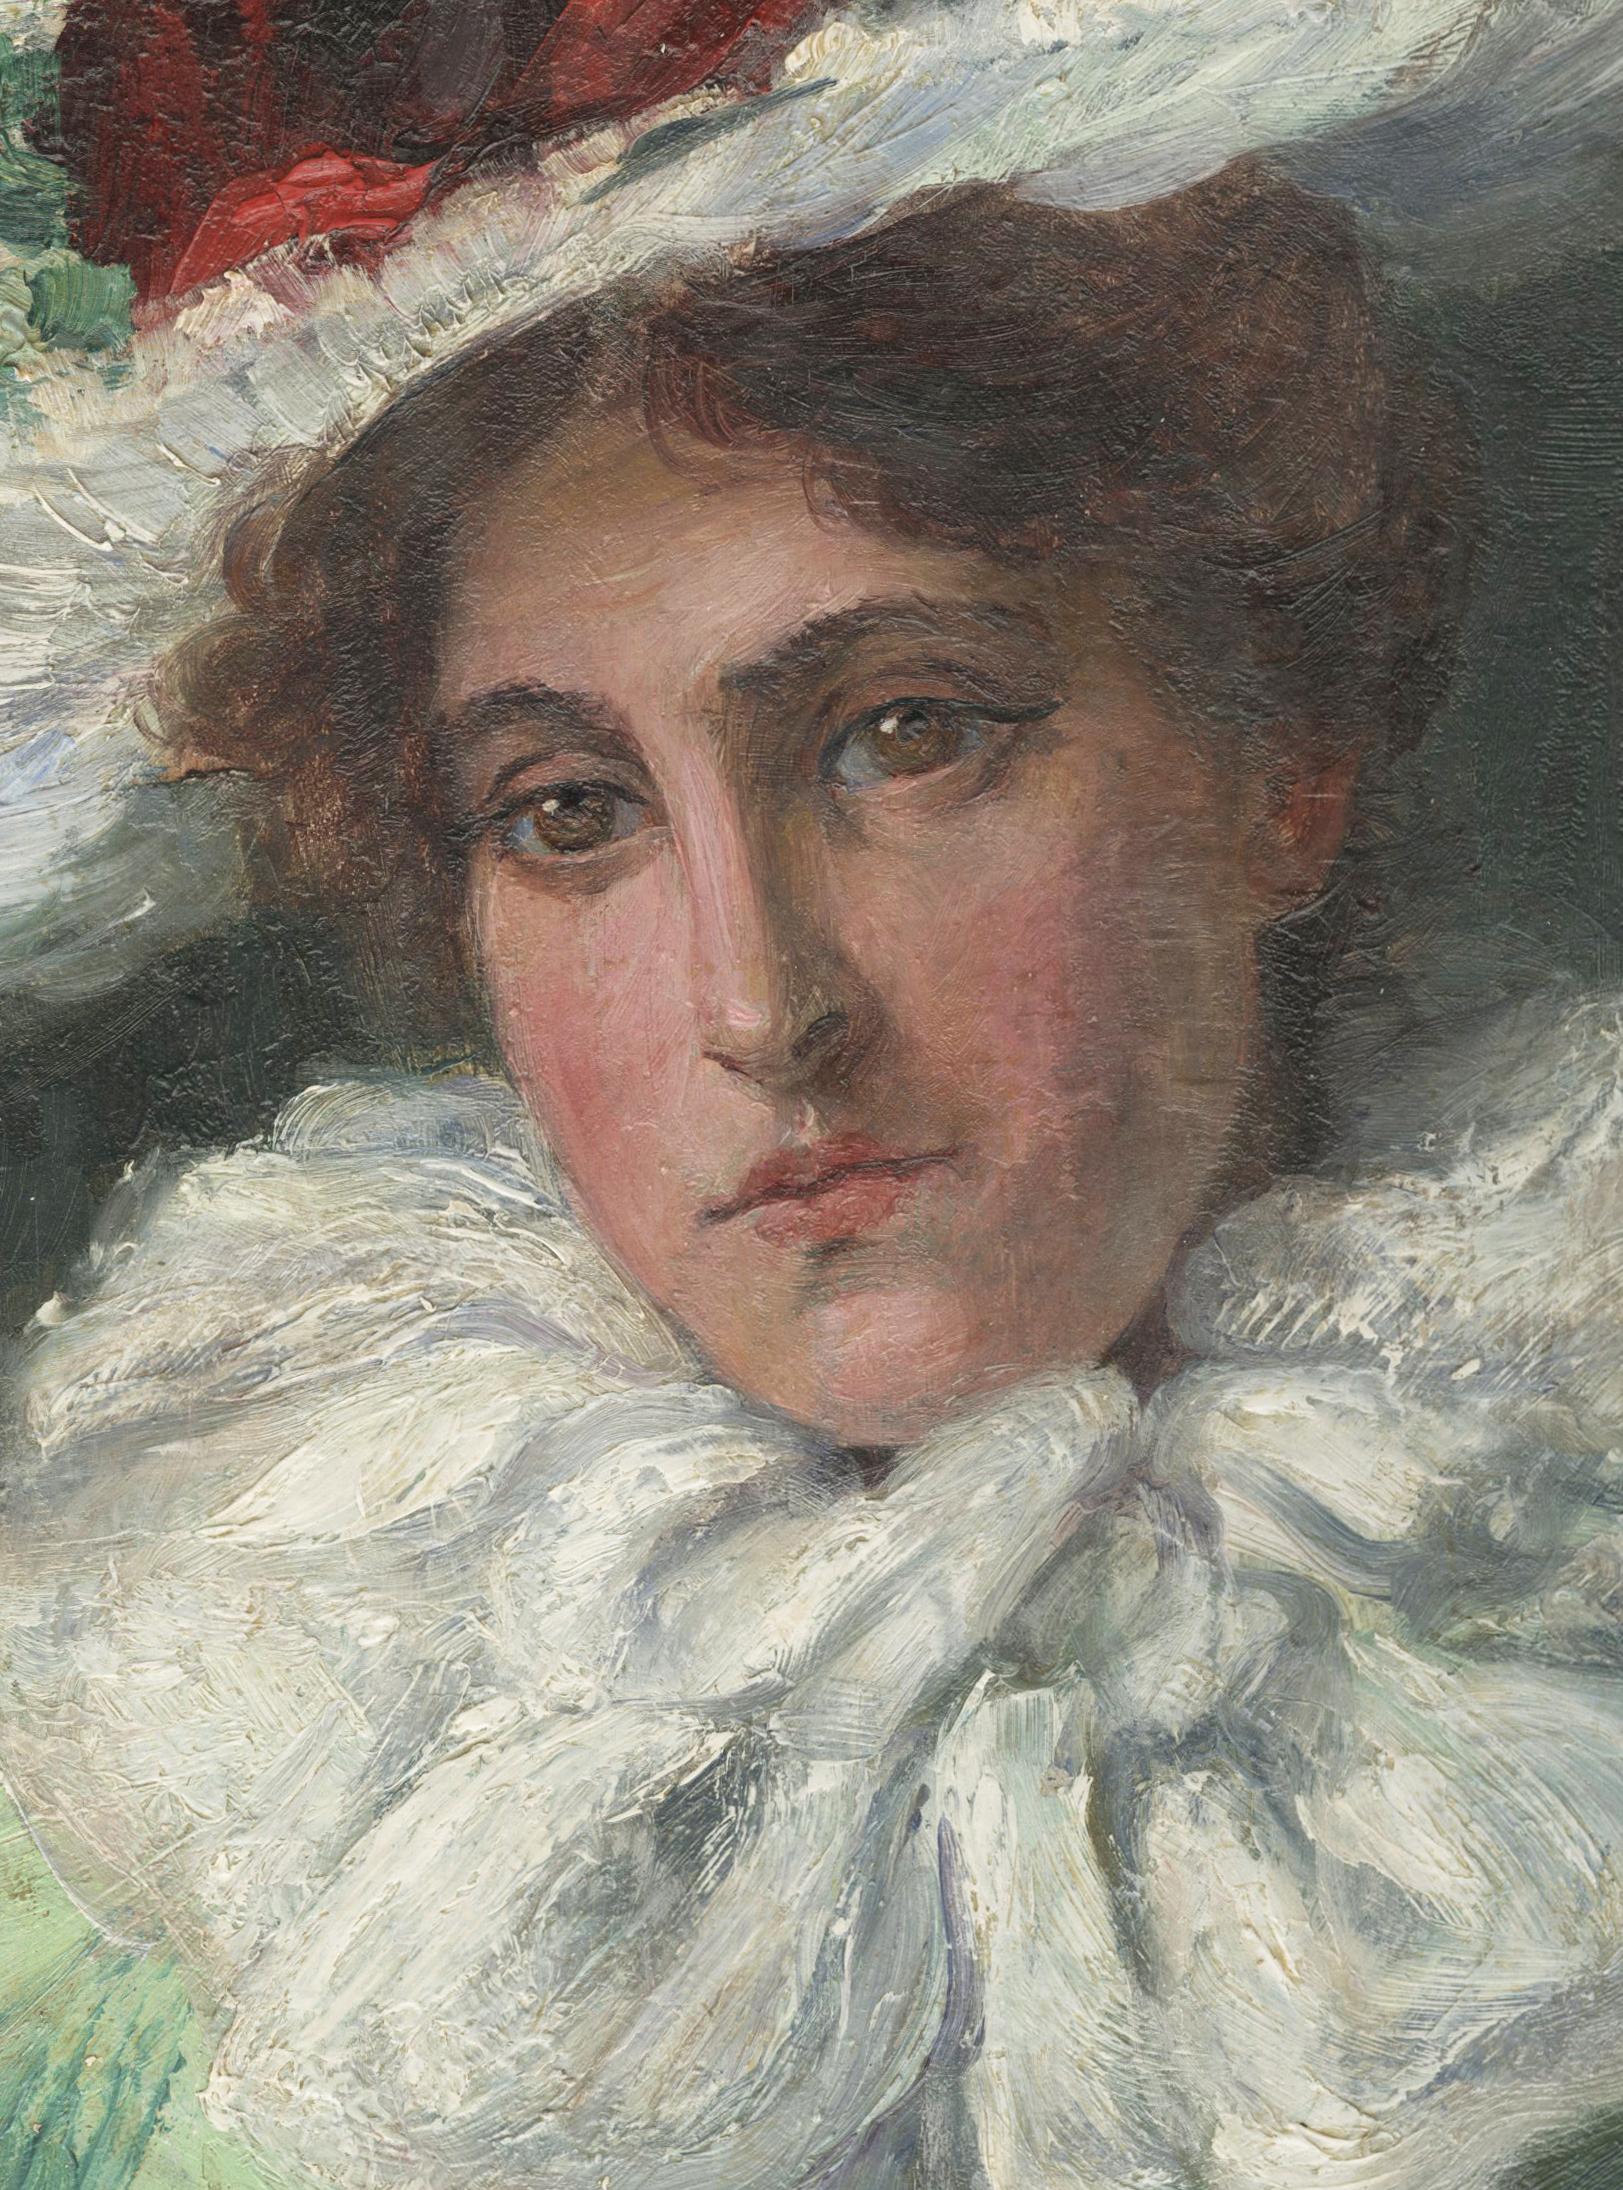 Le foulard blanc (autoportrait de l'artiste) - Painting de Eugenie M. Heller